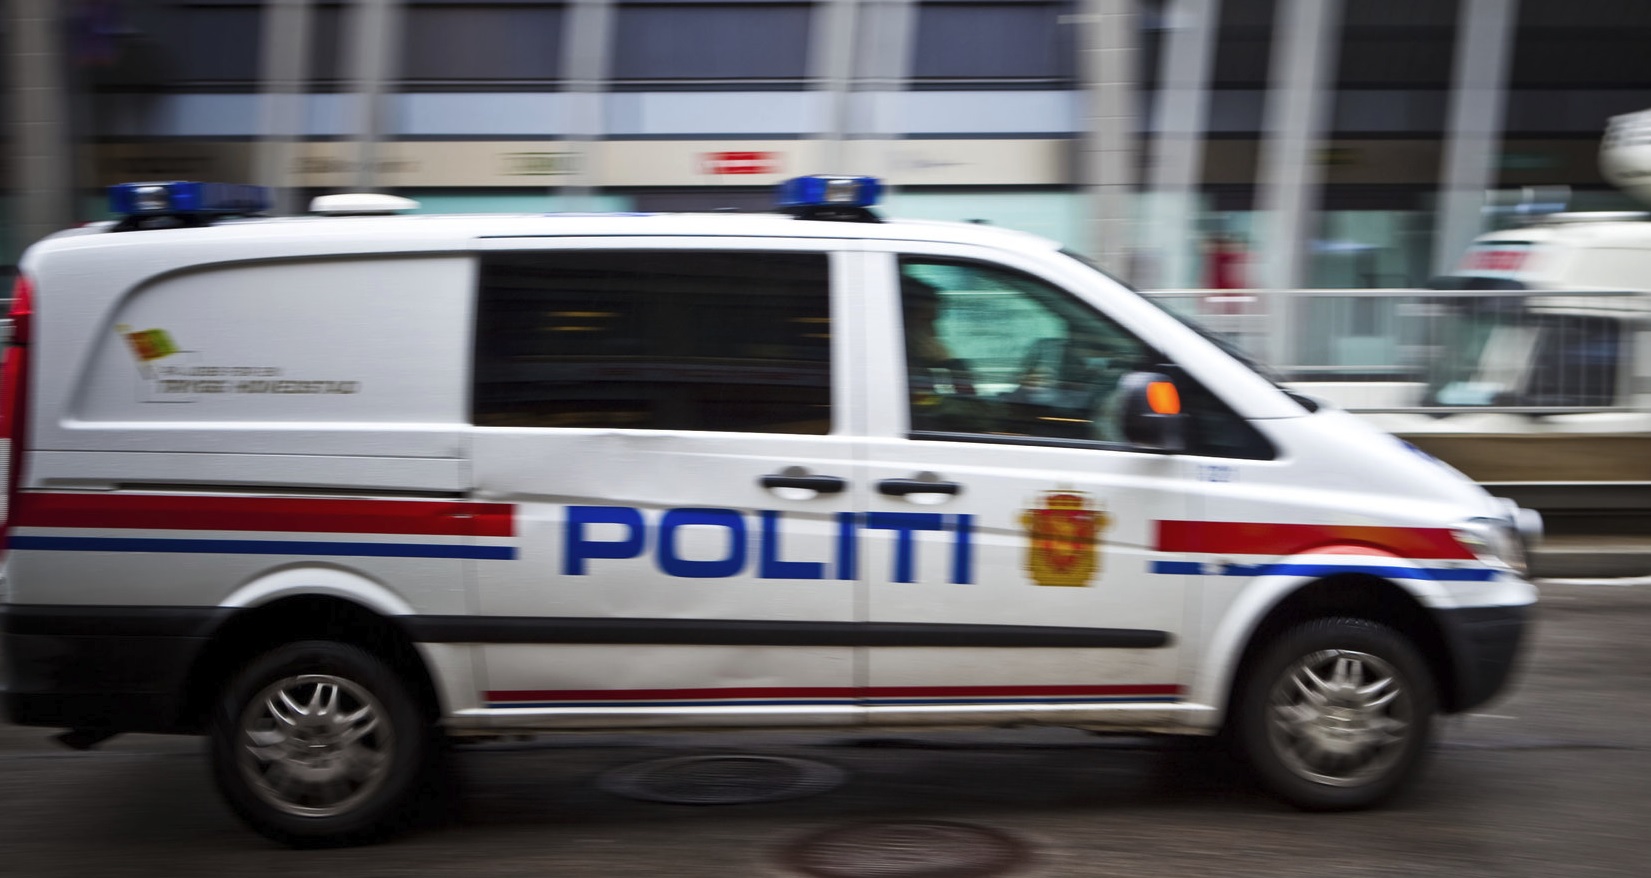 Svenske myndigheter har sett seg lei av at kriminelle gjemmer seg bak avanserte krypteringsapper og ønsker å installere trojanere der en person er mistenkt for alvorlig kriminalitet.